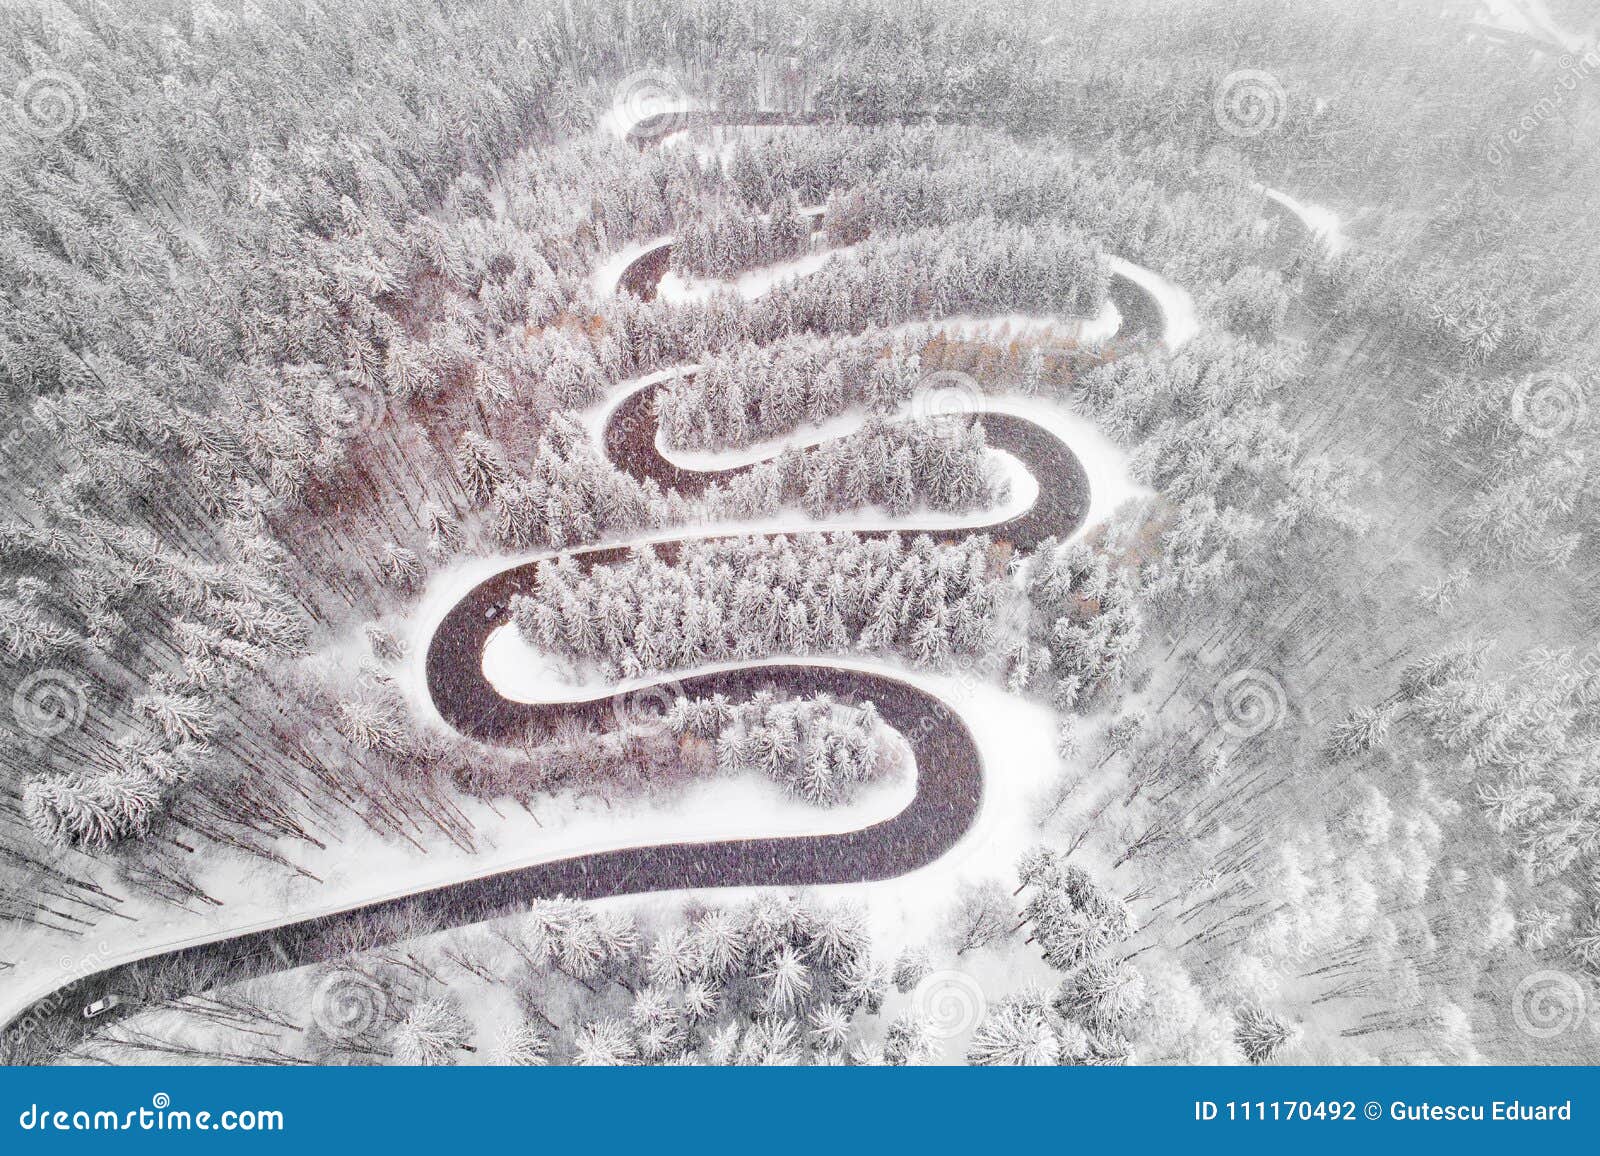 Дорога змейка. Змеи на снегу. Змейка снег. Снежная змея. Дорога змейкой.